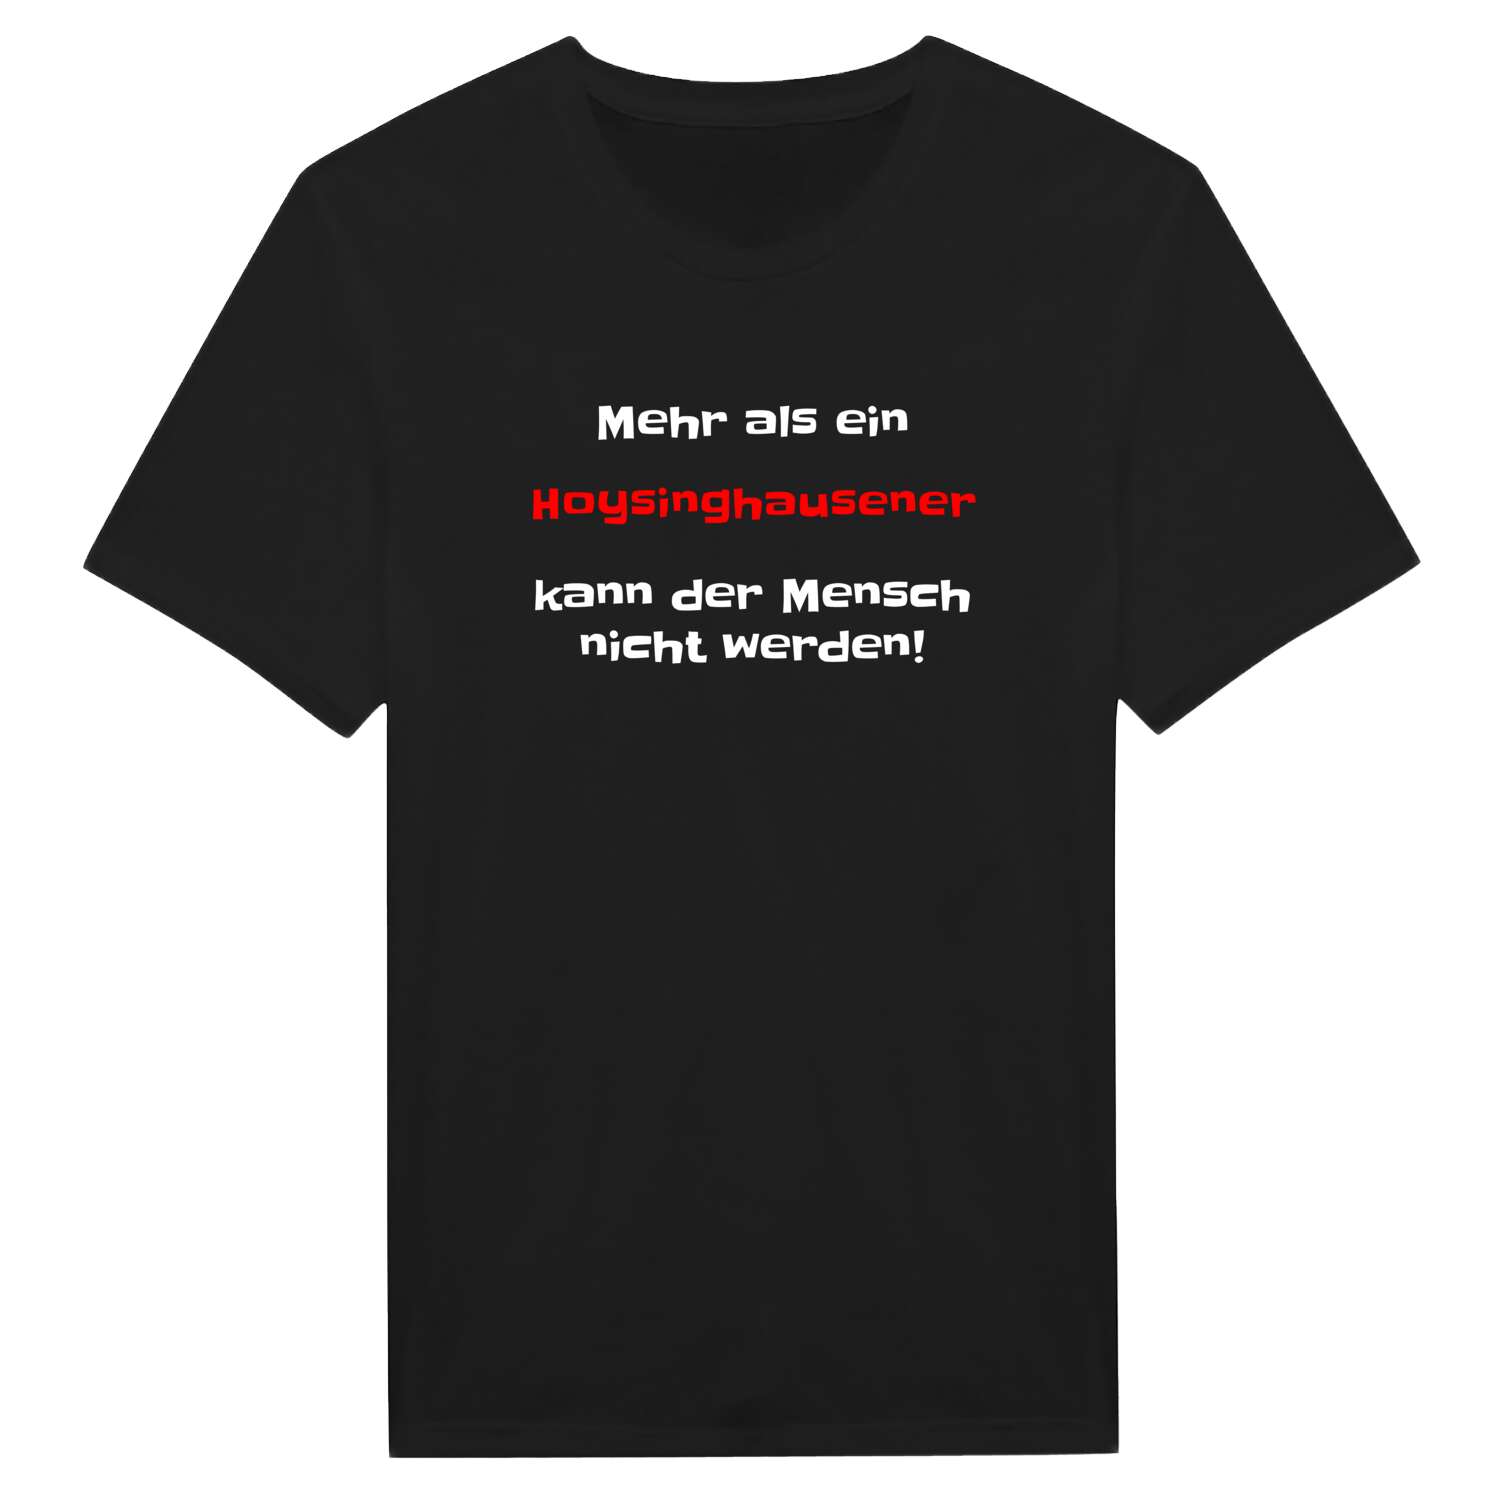 Hoysinghausen T-Shirt »Mehr als ein«